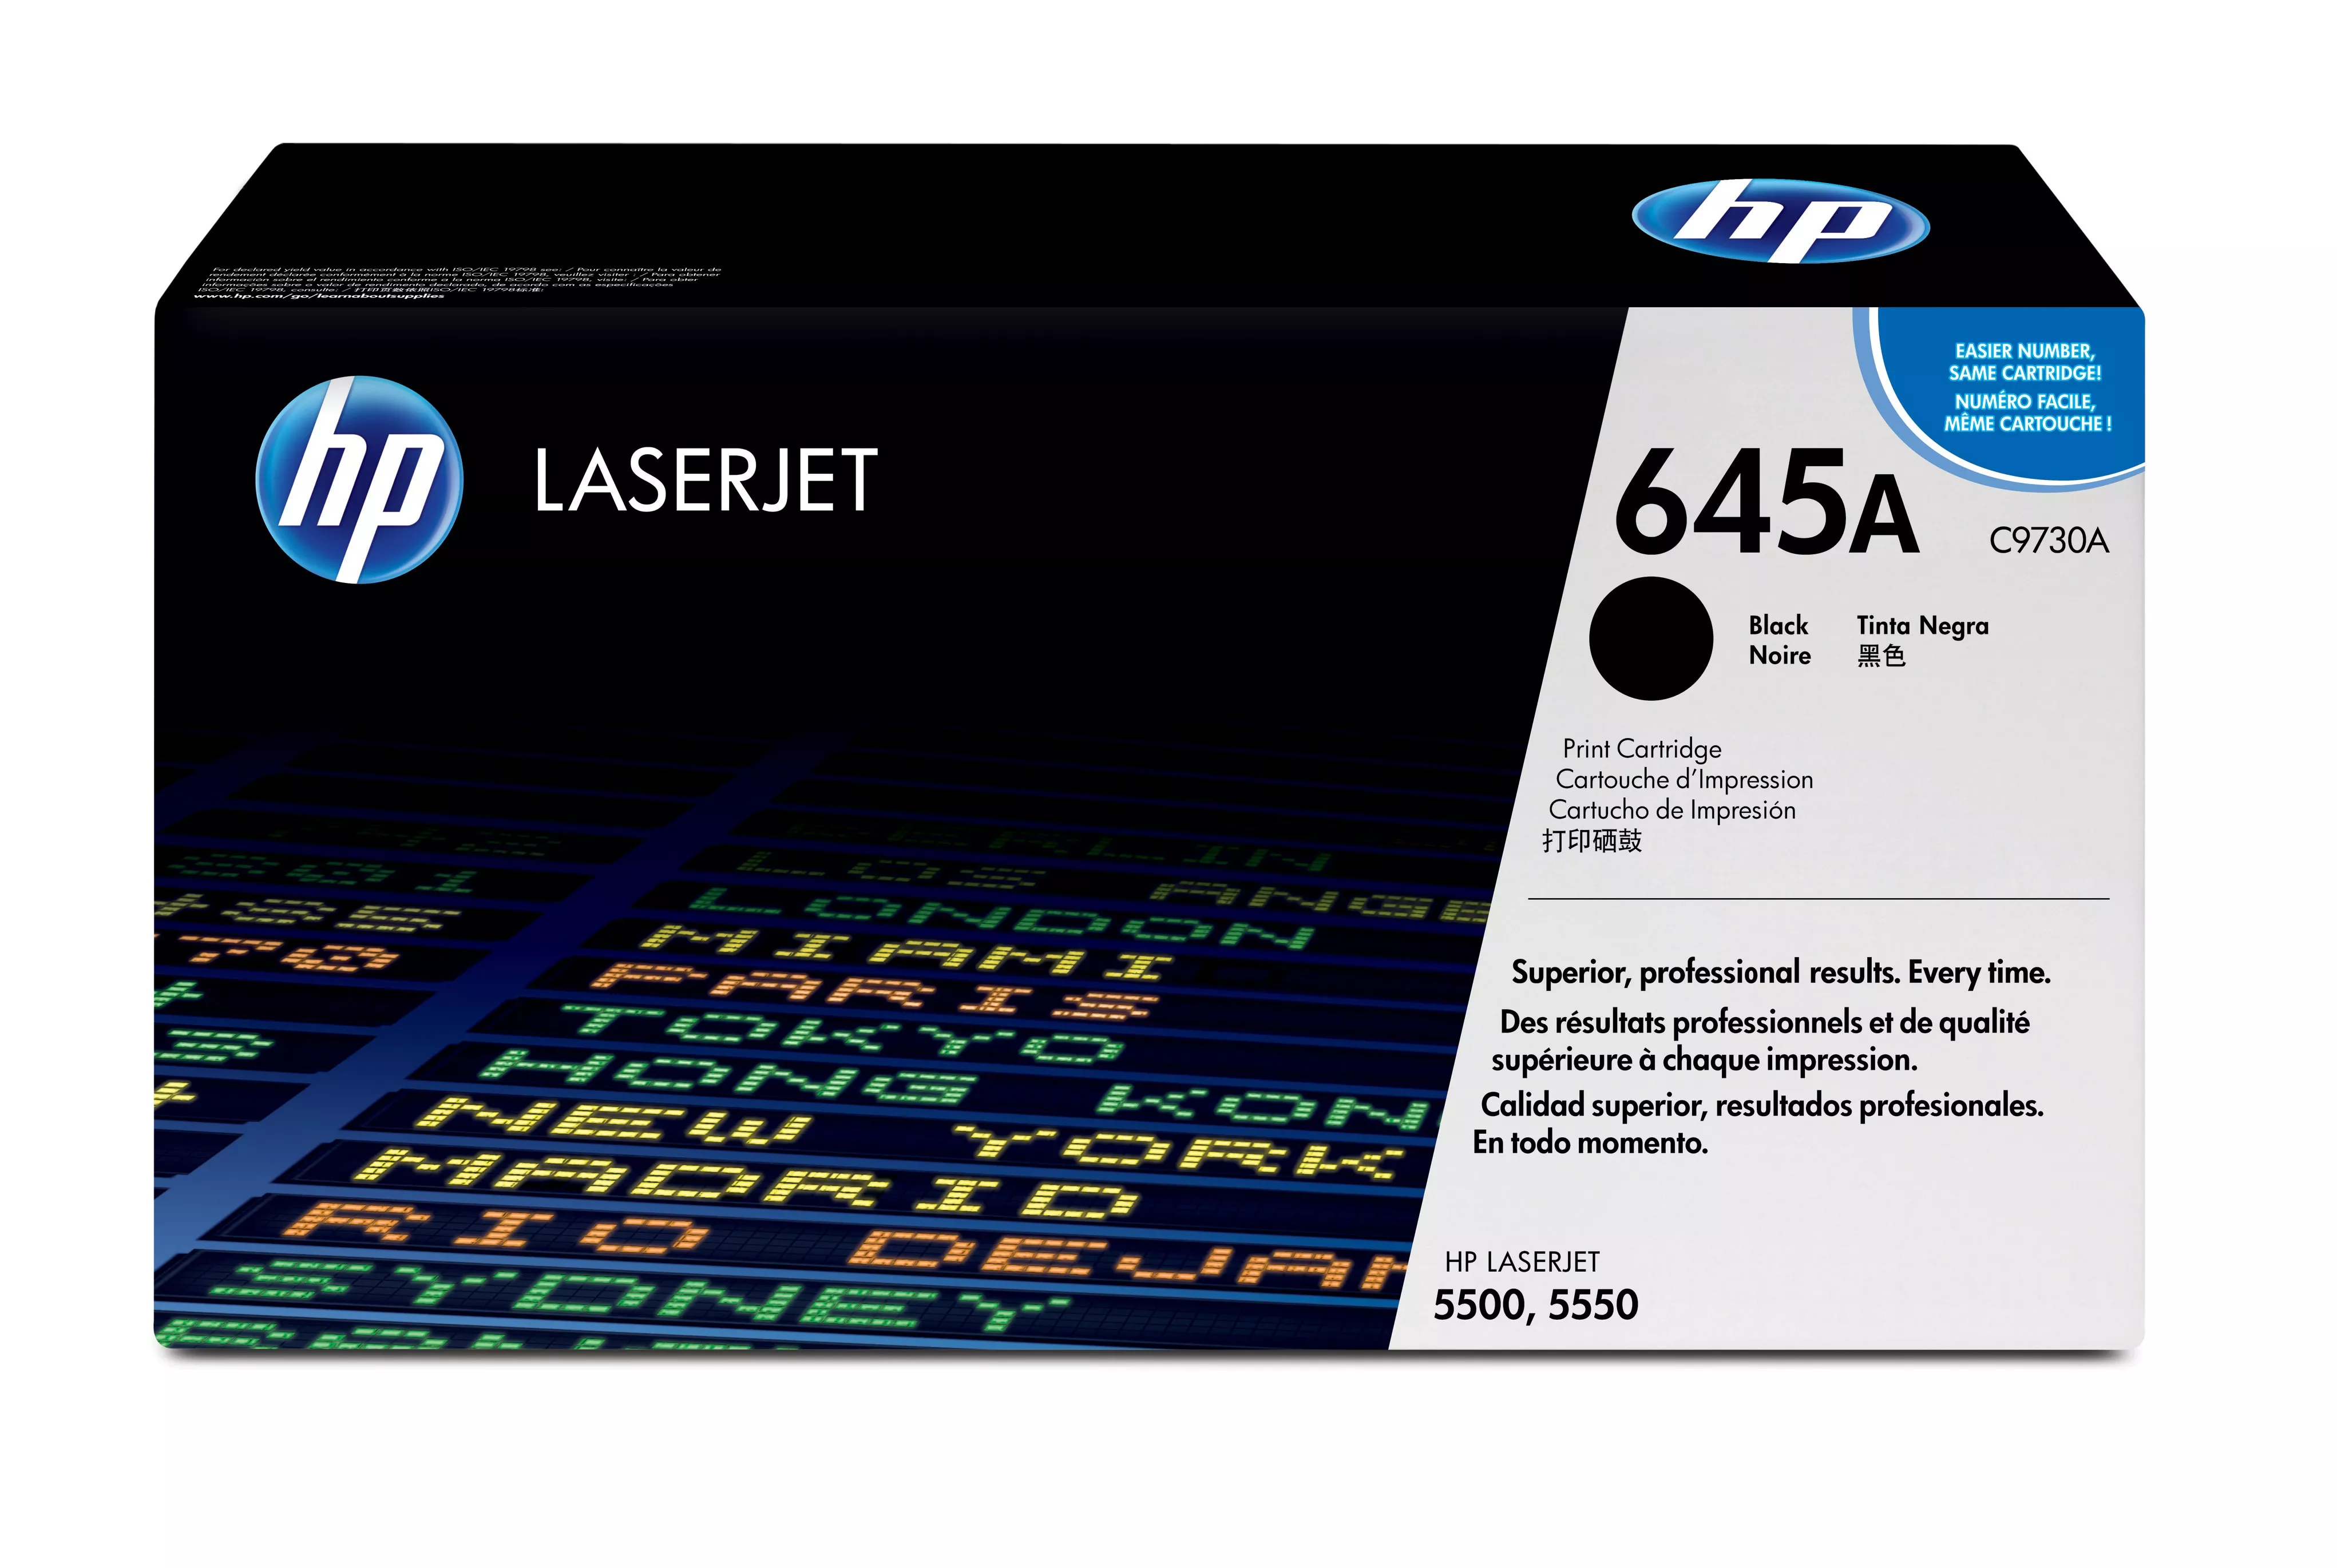 Achat HP 645A original Colour LaserJet Toner cartridge C9730A au meilleur prix